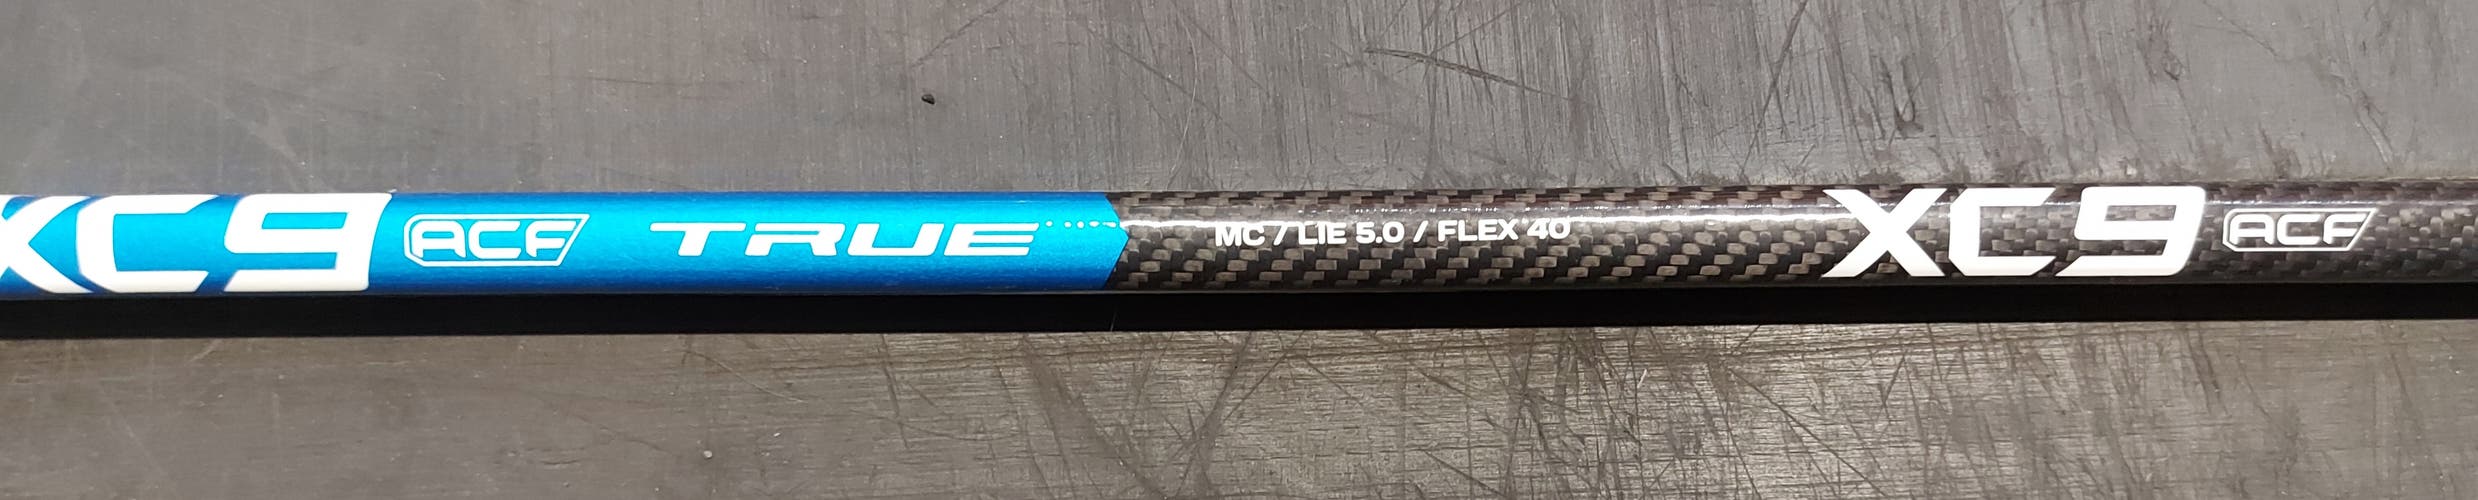 New TRUE XC9 Junior Right Handed Hockey Stick MC/LIE 5.0/FLEX 40